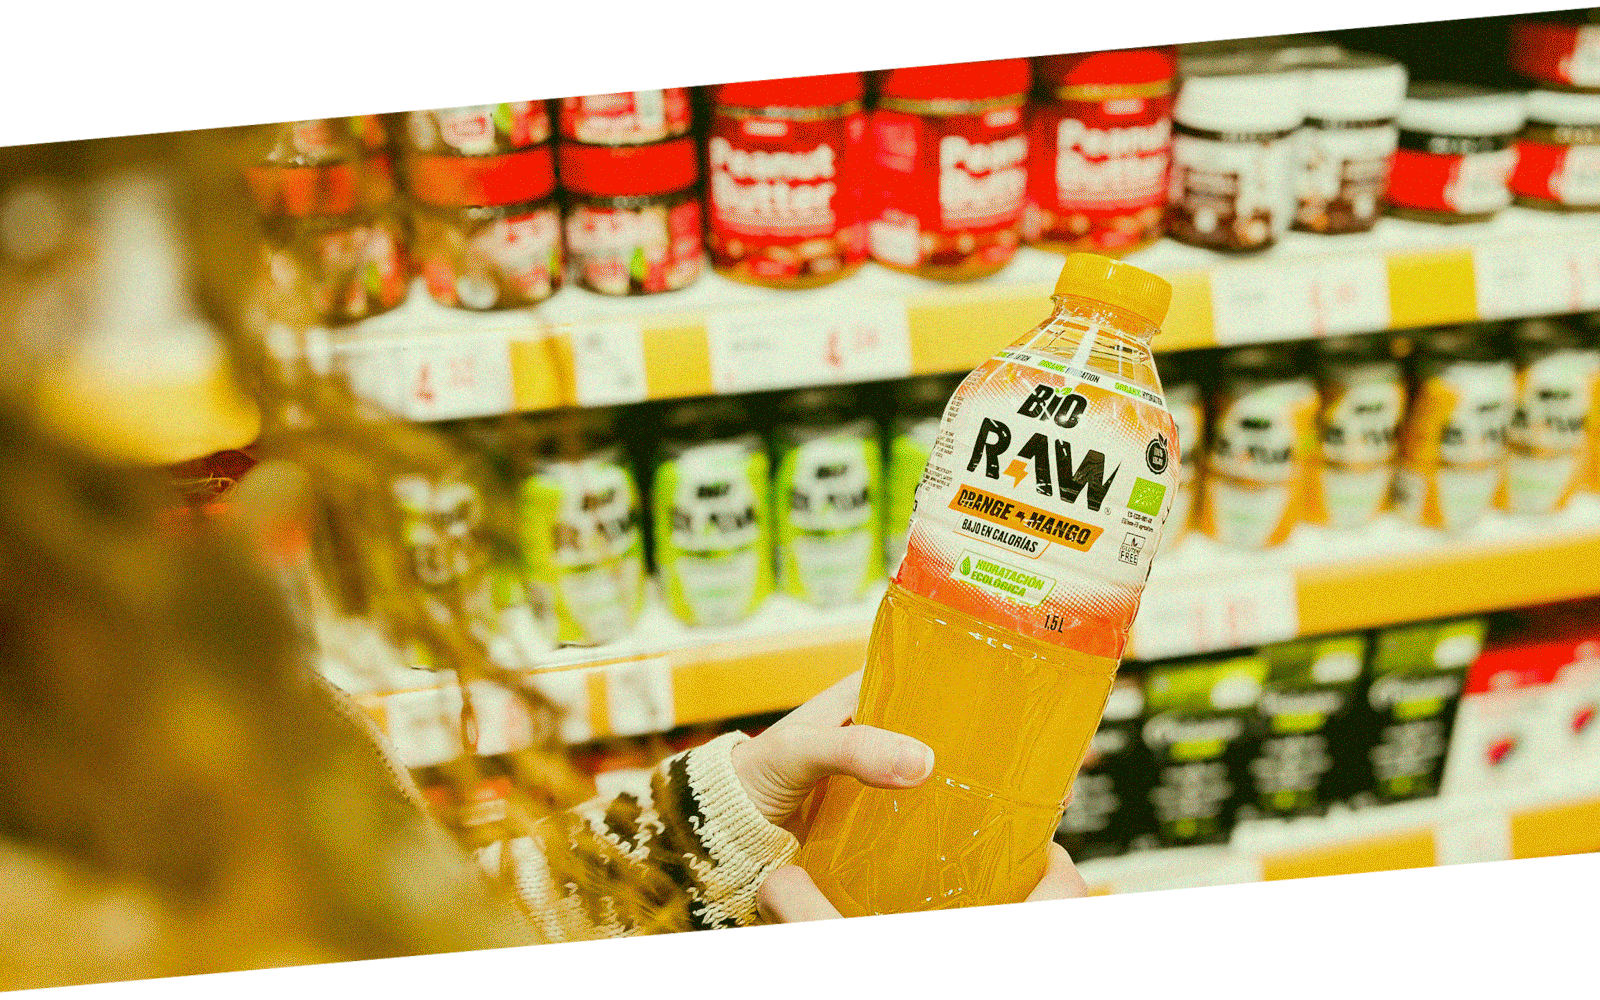 Lineales de RAW en distintos supermercados